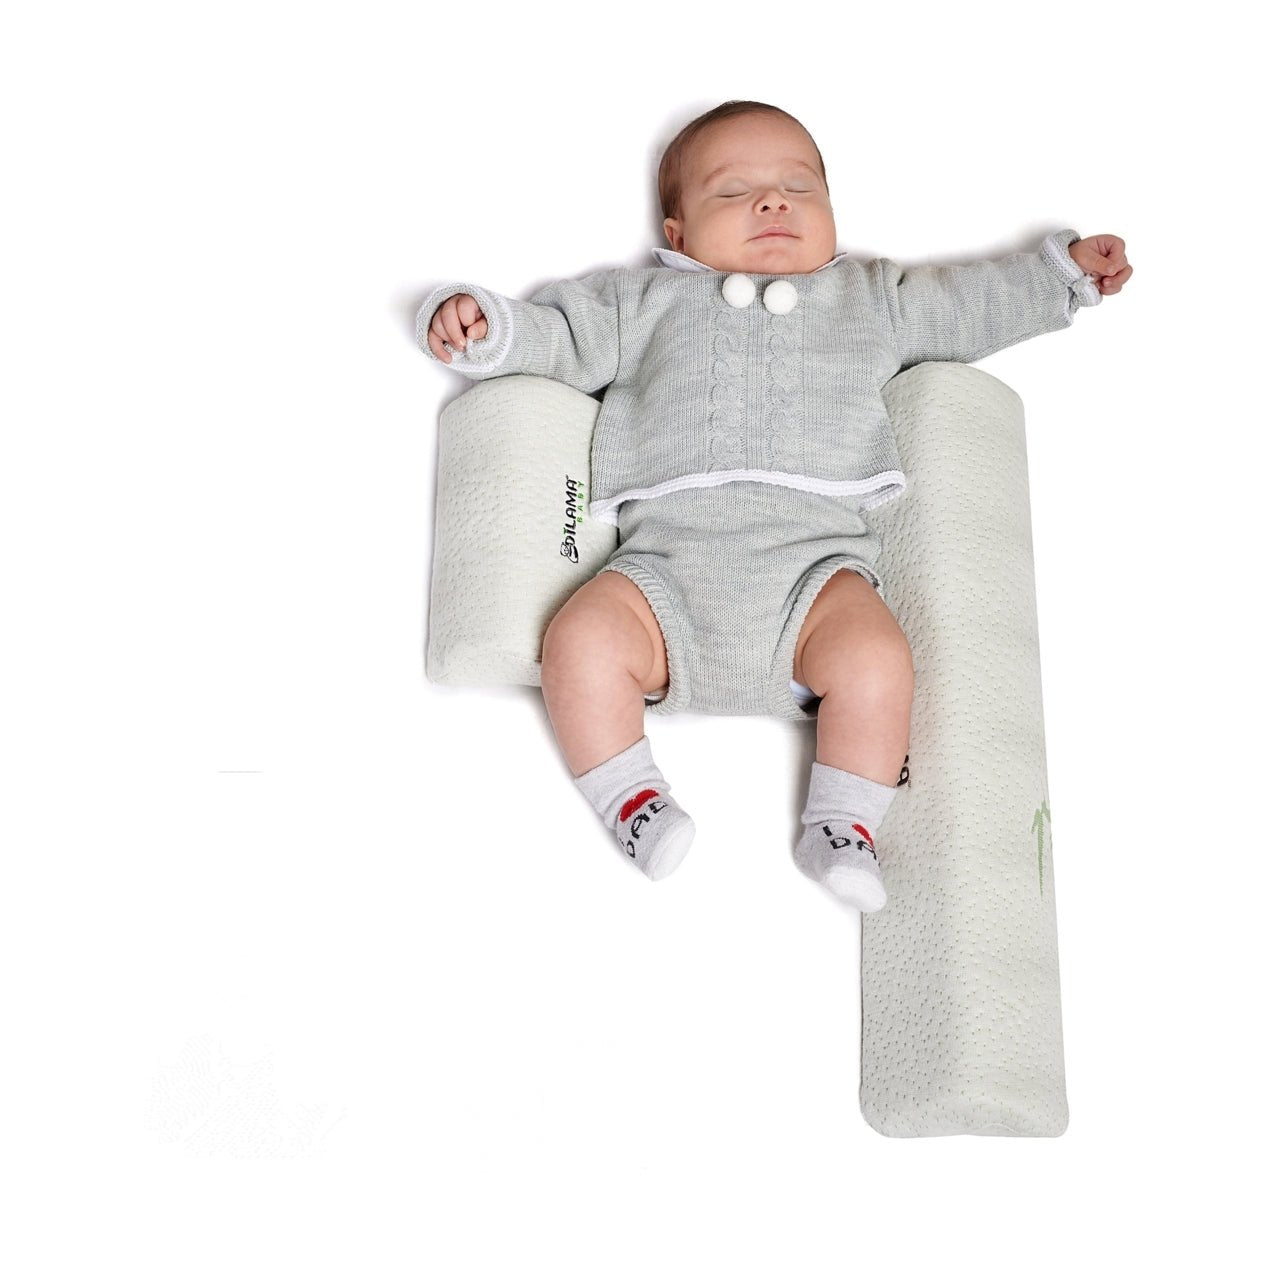 Sonno neonato : come farlo dormire sul cuscino allattamento (video